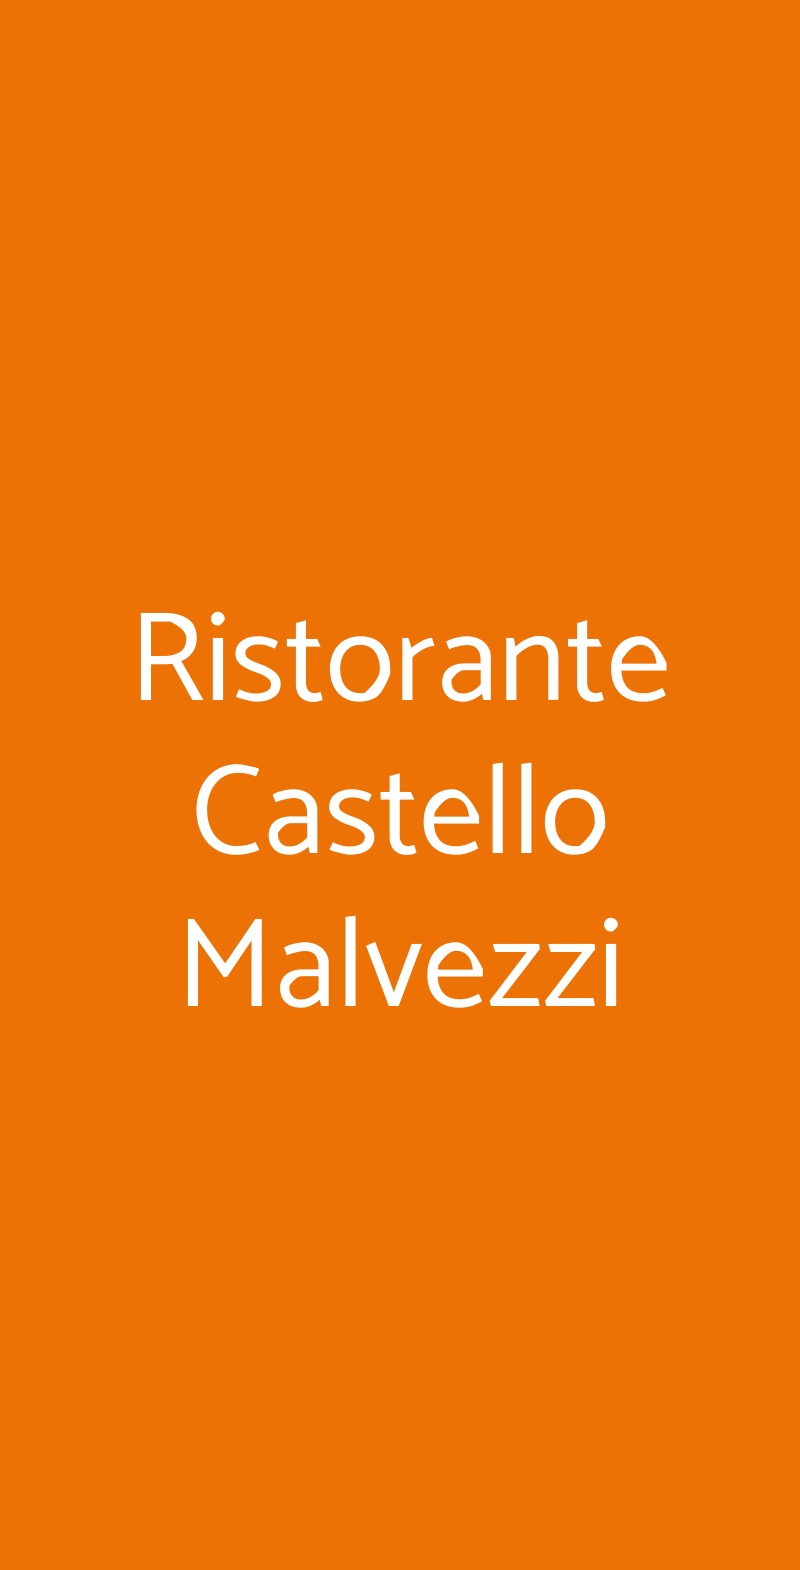 Ristorante Castello Malvezzi Brescia menù 1 pagina